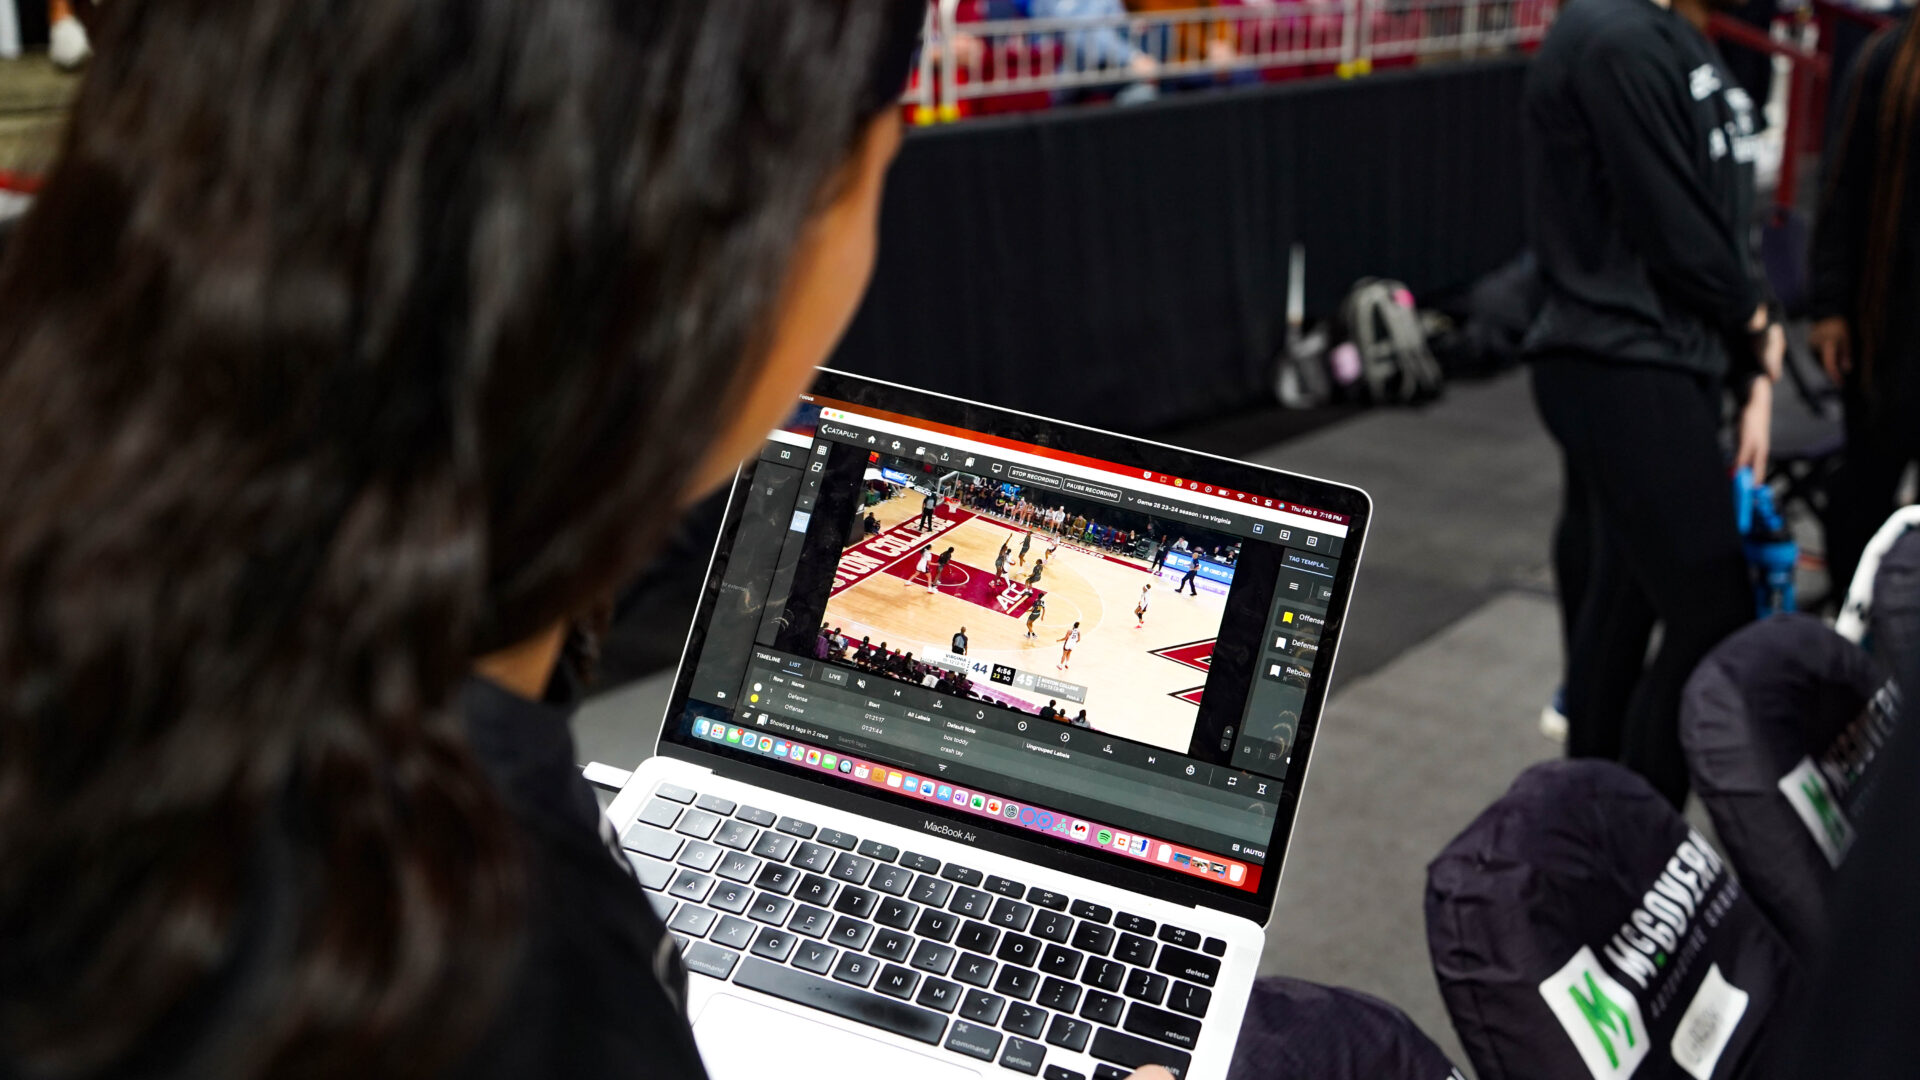 Происходит целенаправленное взаимодействие между баскетболистом Бостонского колледжа и тренером, при этом анализ Pro Video Focus виден на экране ноутбука. Это подчеркивает интеграцию анализа видео в реальном времени в их тренировки, что имеет решающее значение для повышения производительности и игровой тактики.